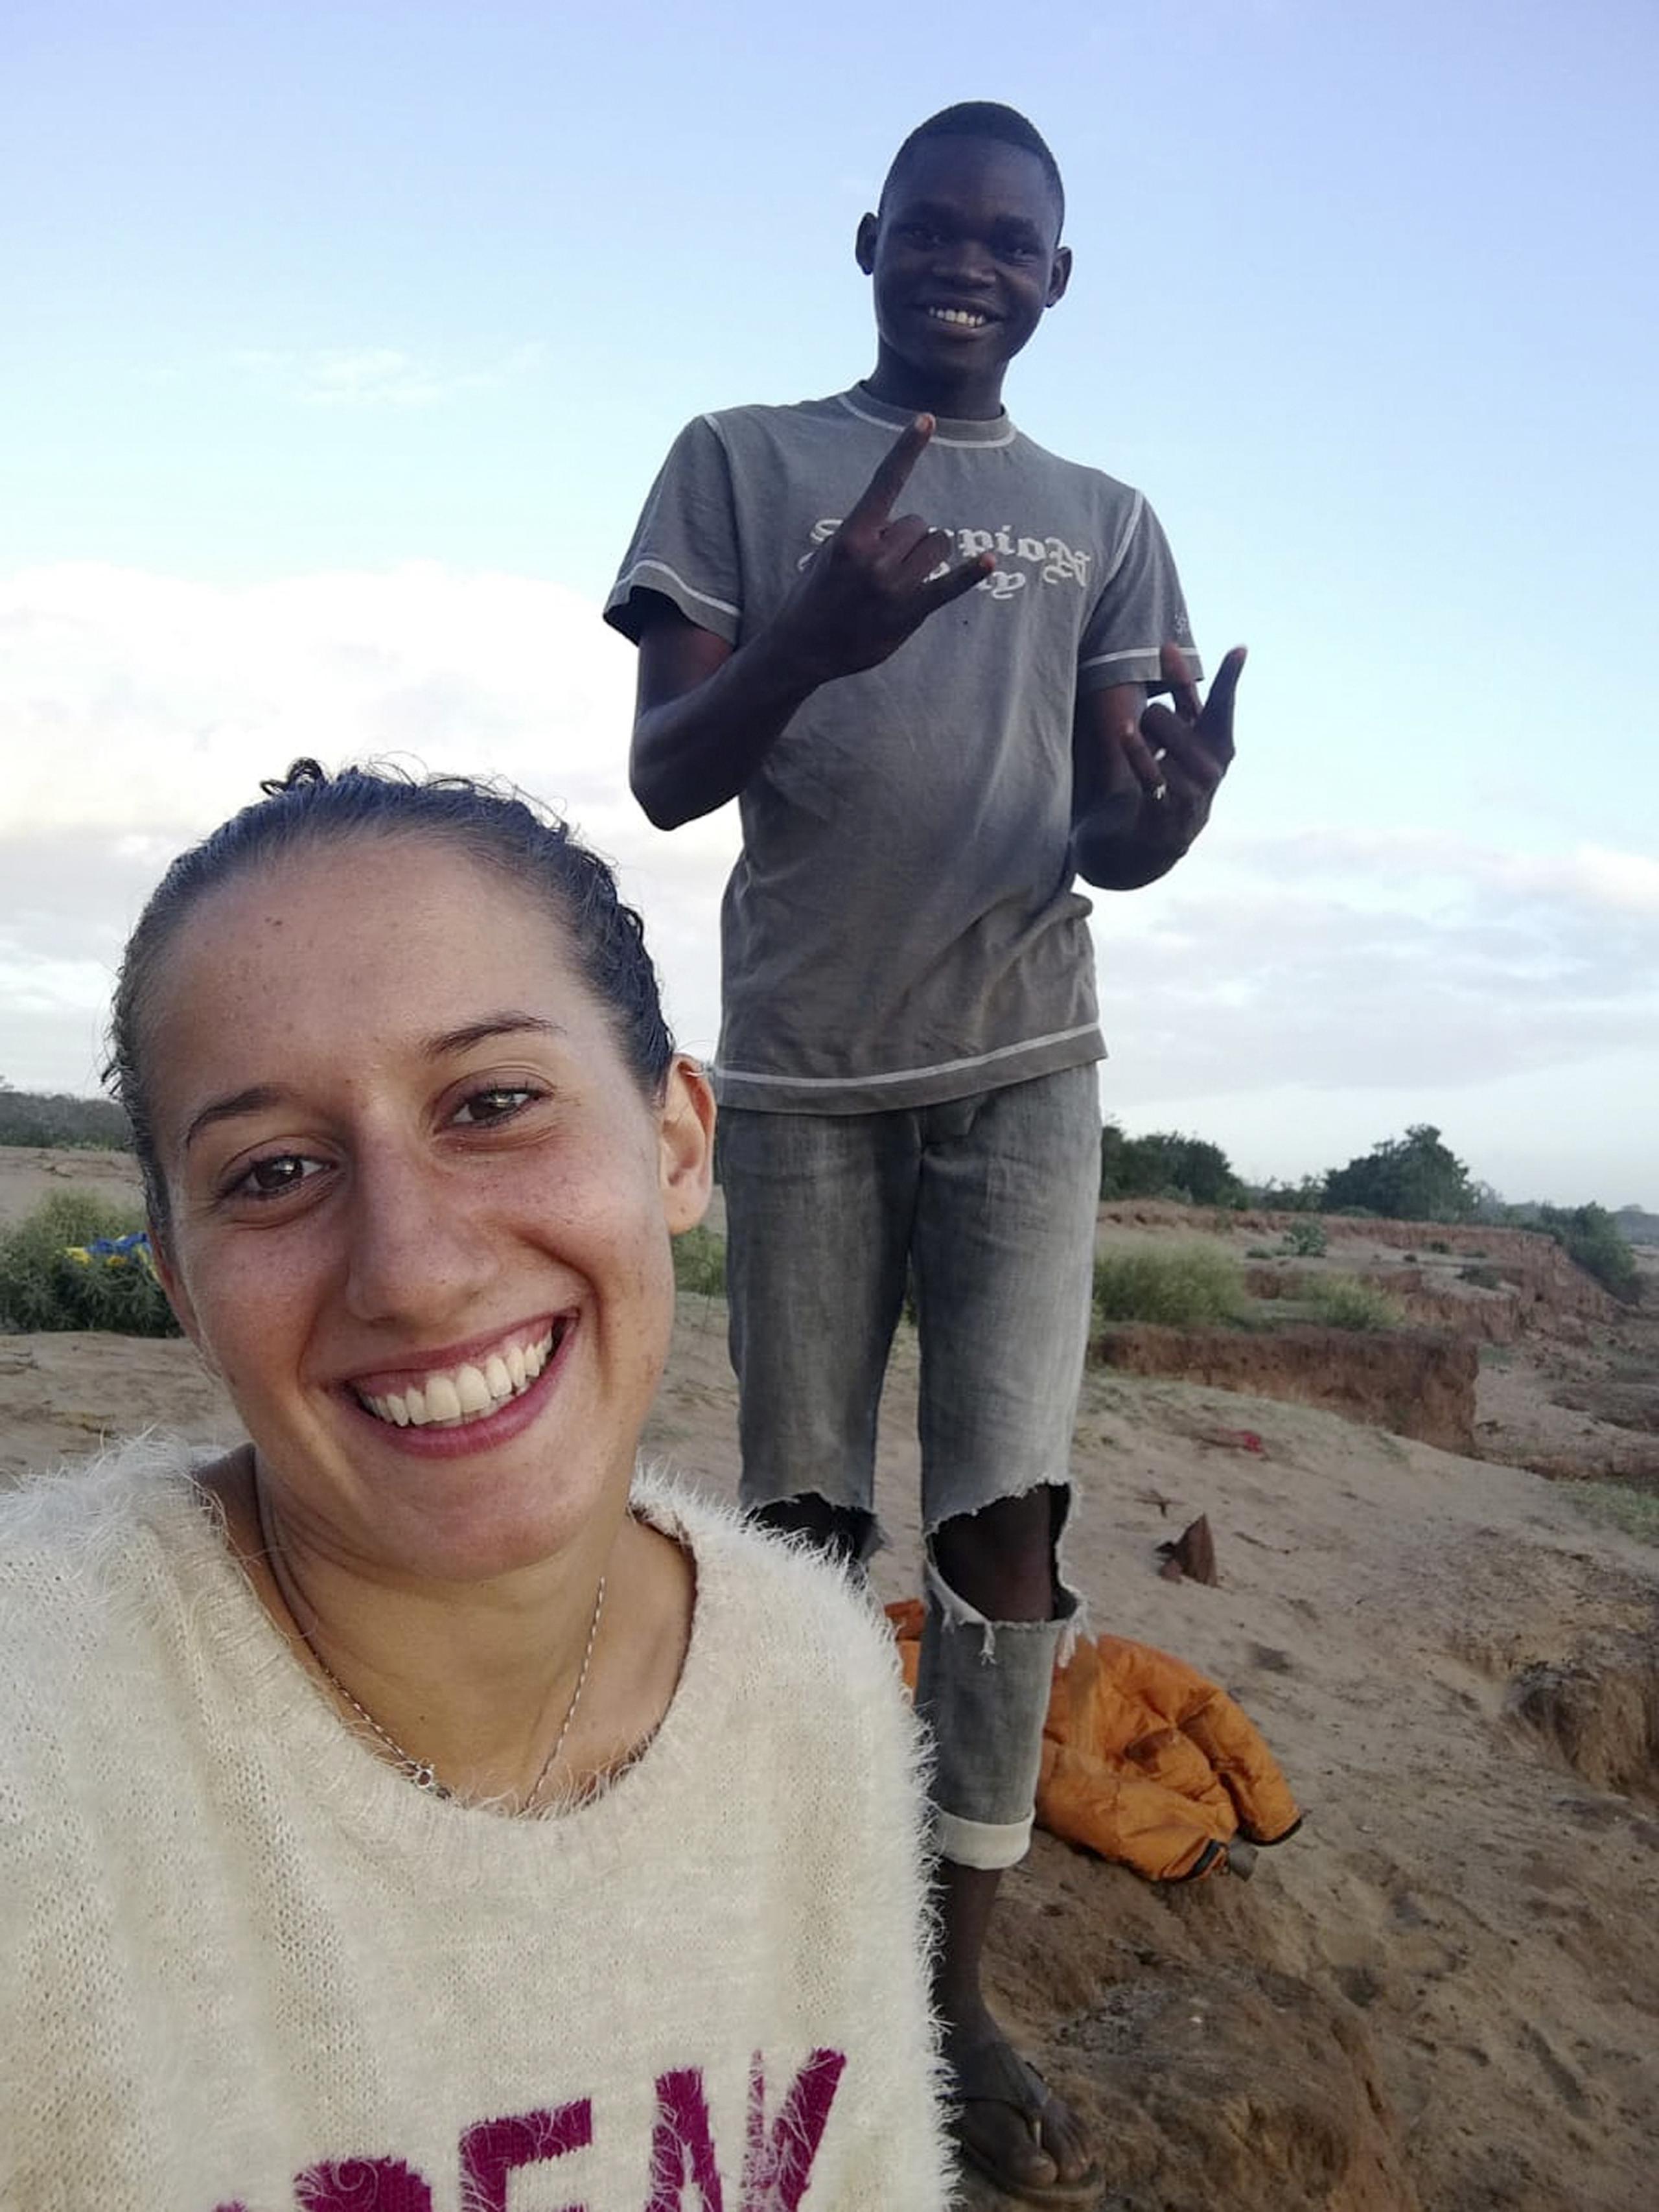 La voluntaria italiana Silvia Constanza Rmano posa con Ronald Kazungu Ngala, de 19 años, en la aldea de Chakama, en el condado costero de Kilifi, en Kenia